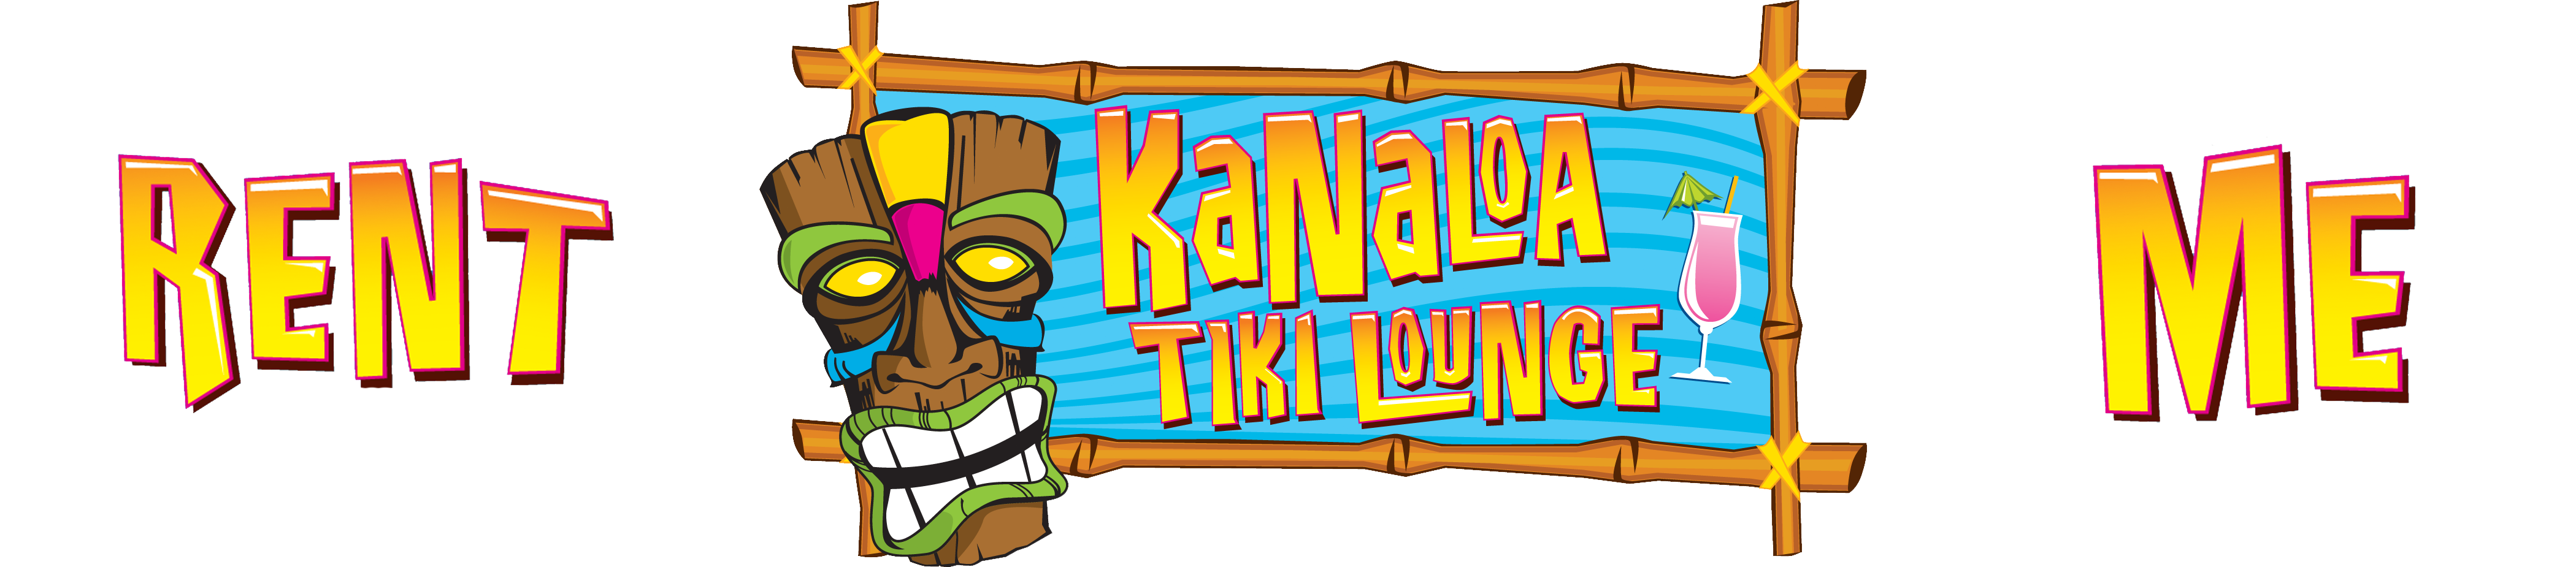 Kanaloa Tiki Lounge